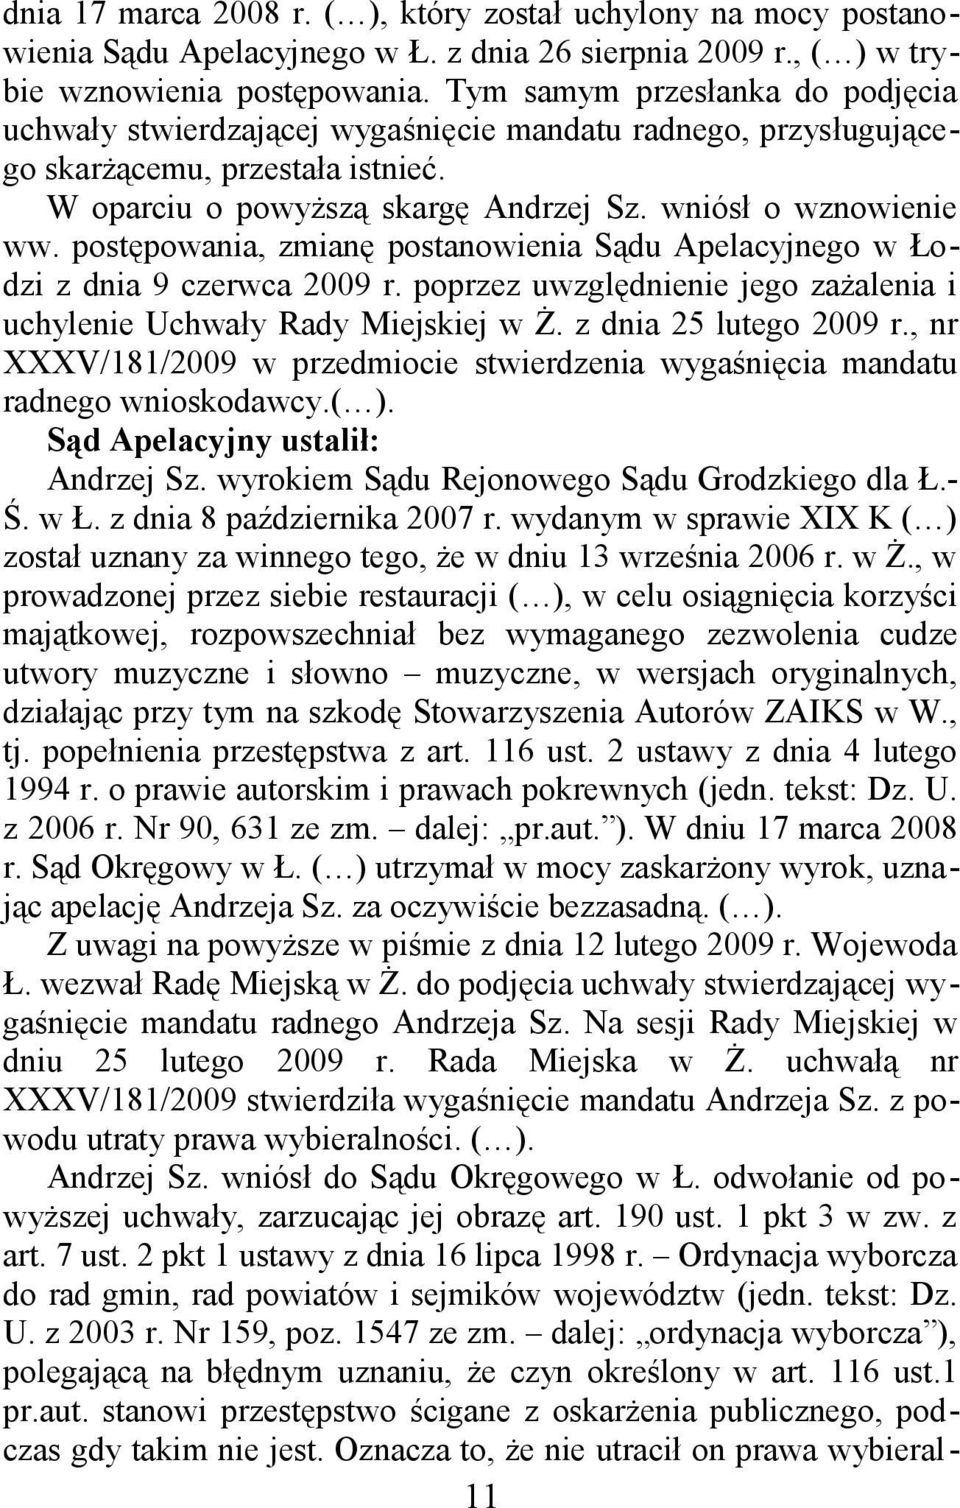 postępowania, zmianę postanowienia Sądu Apelacyjnego w Łodzi z dnia 9 czerwca 2009 r. poprzez uwzględnienie jego zażalenia i uchylenie Uchwały Rady Miejskiej w Ż. z dnia 25 lutego 2009 r.